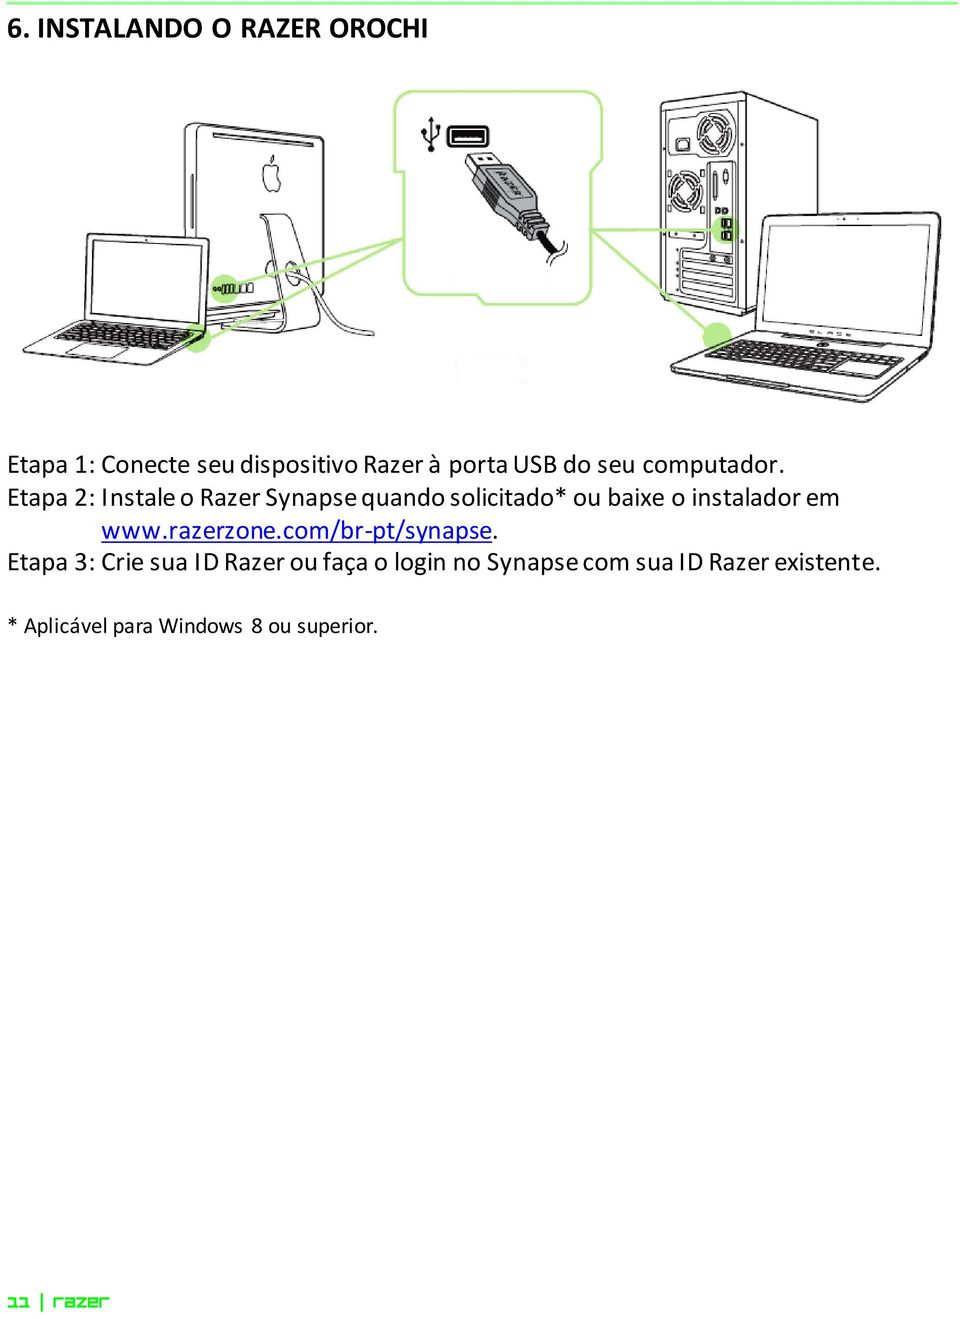 Etapa 2: Instale o Razer Synapse quando solicitado* ou baixe o instalador em www.